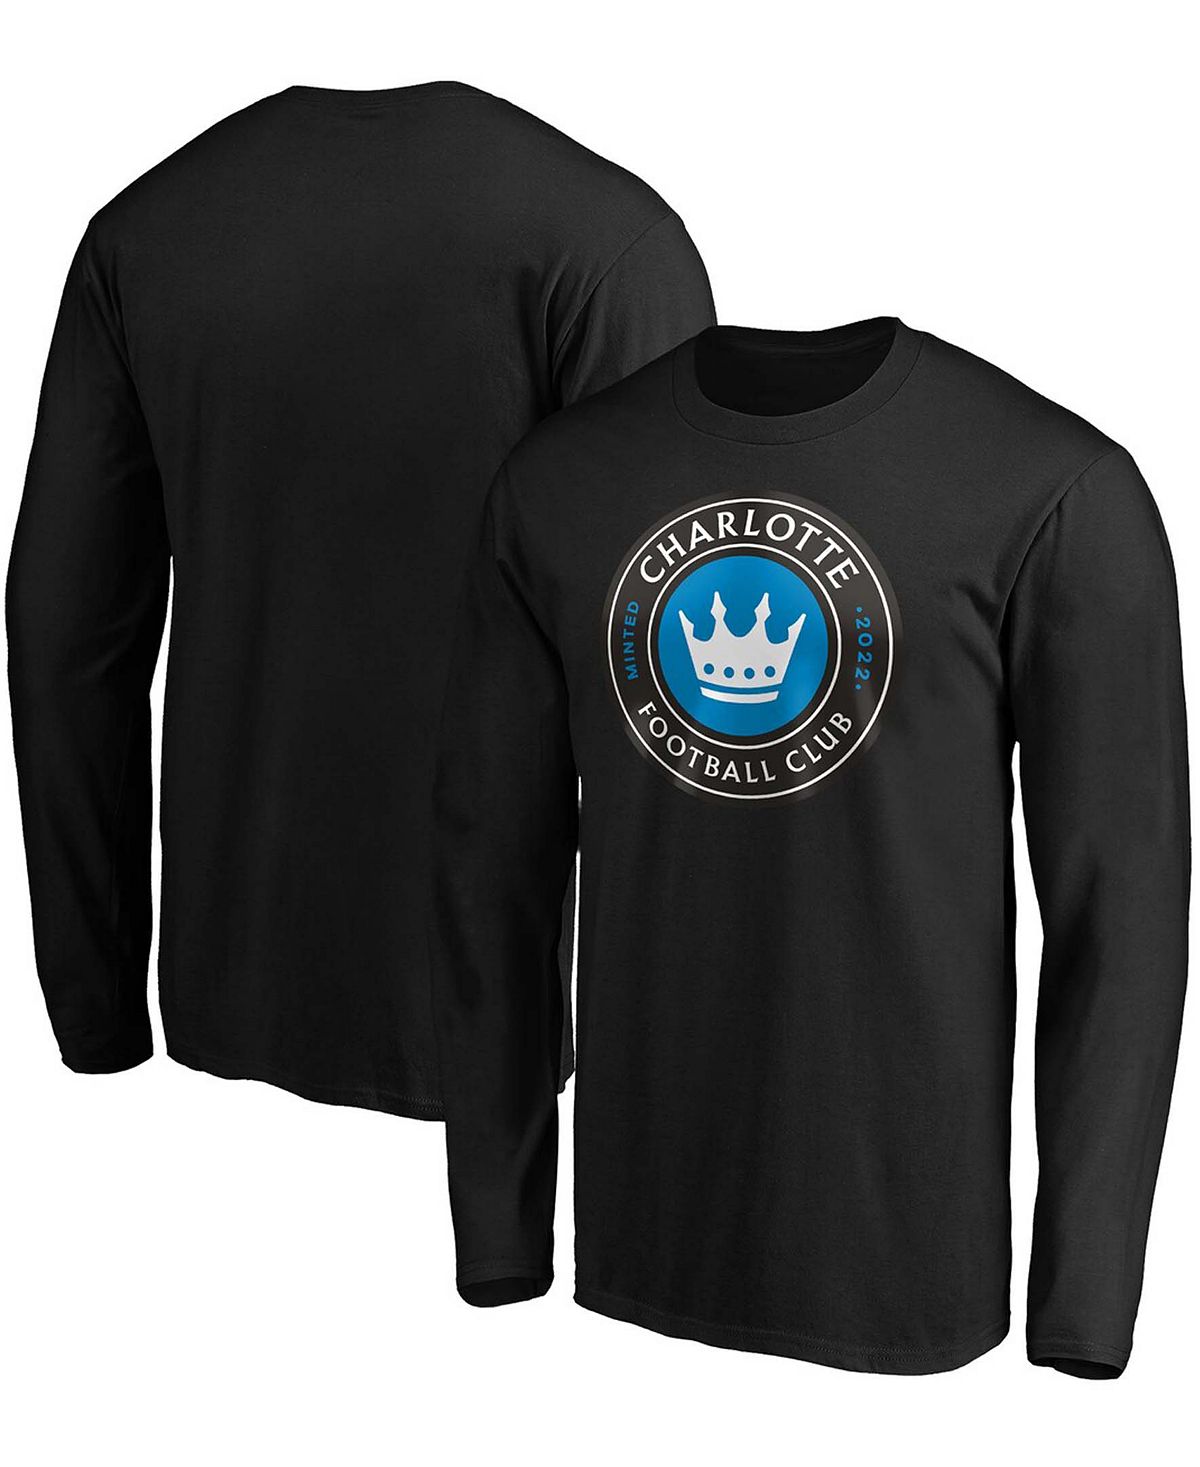 Мужская черная футболка с длинным рукавом и логотипом Charlotte FC Primary Fanatics